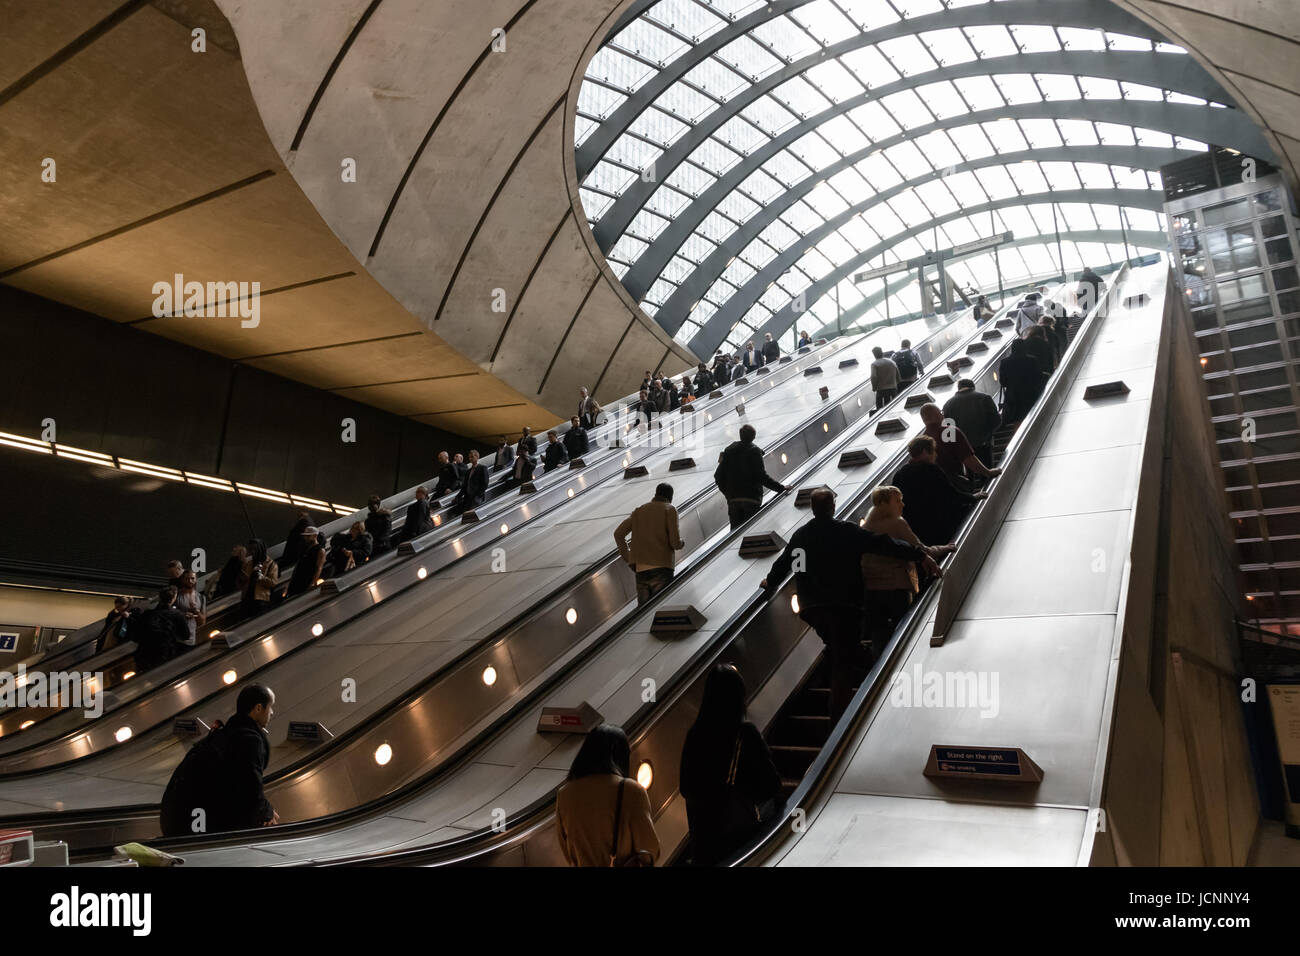 Londres, Royaume-Uni - 27 mars 2017 : la station de métro de Canary Wharf pendant l'heure de pointe avec de nombreux navetteurs Banque D'Images